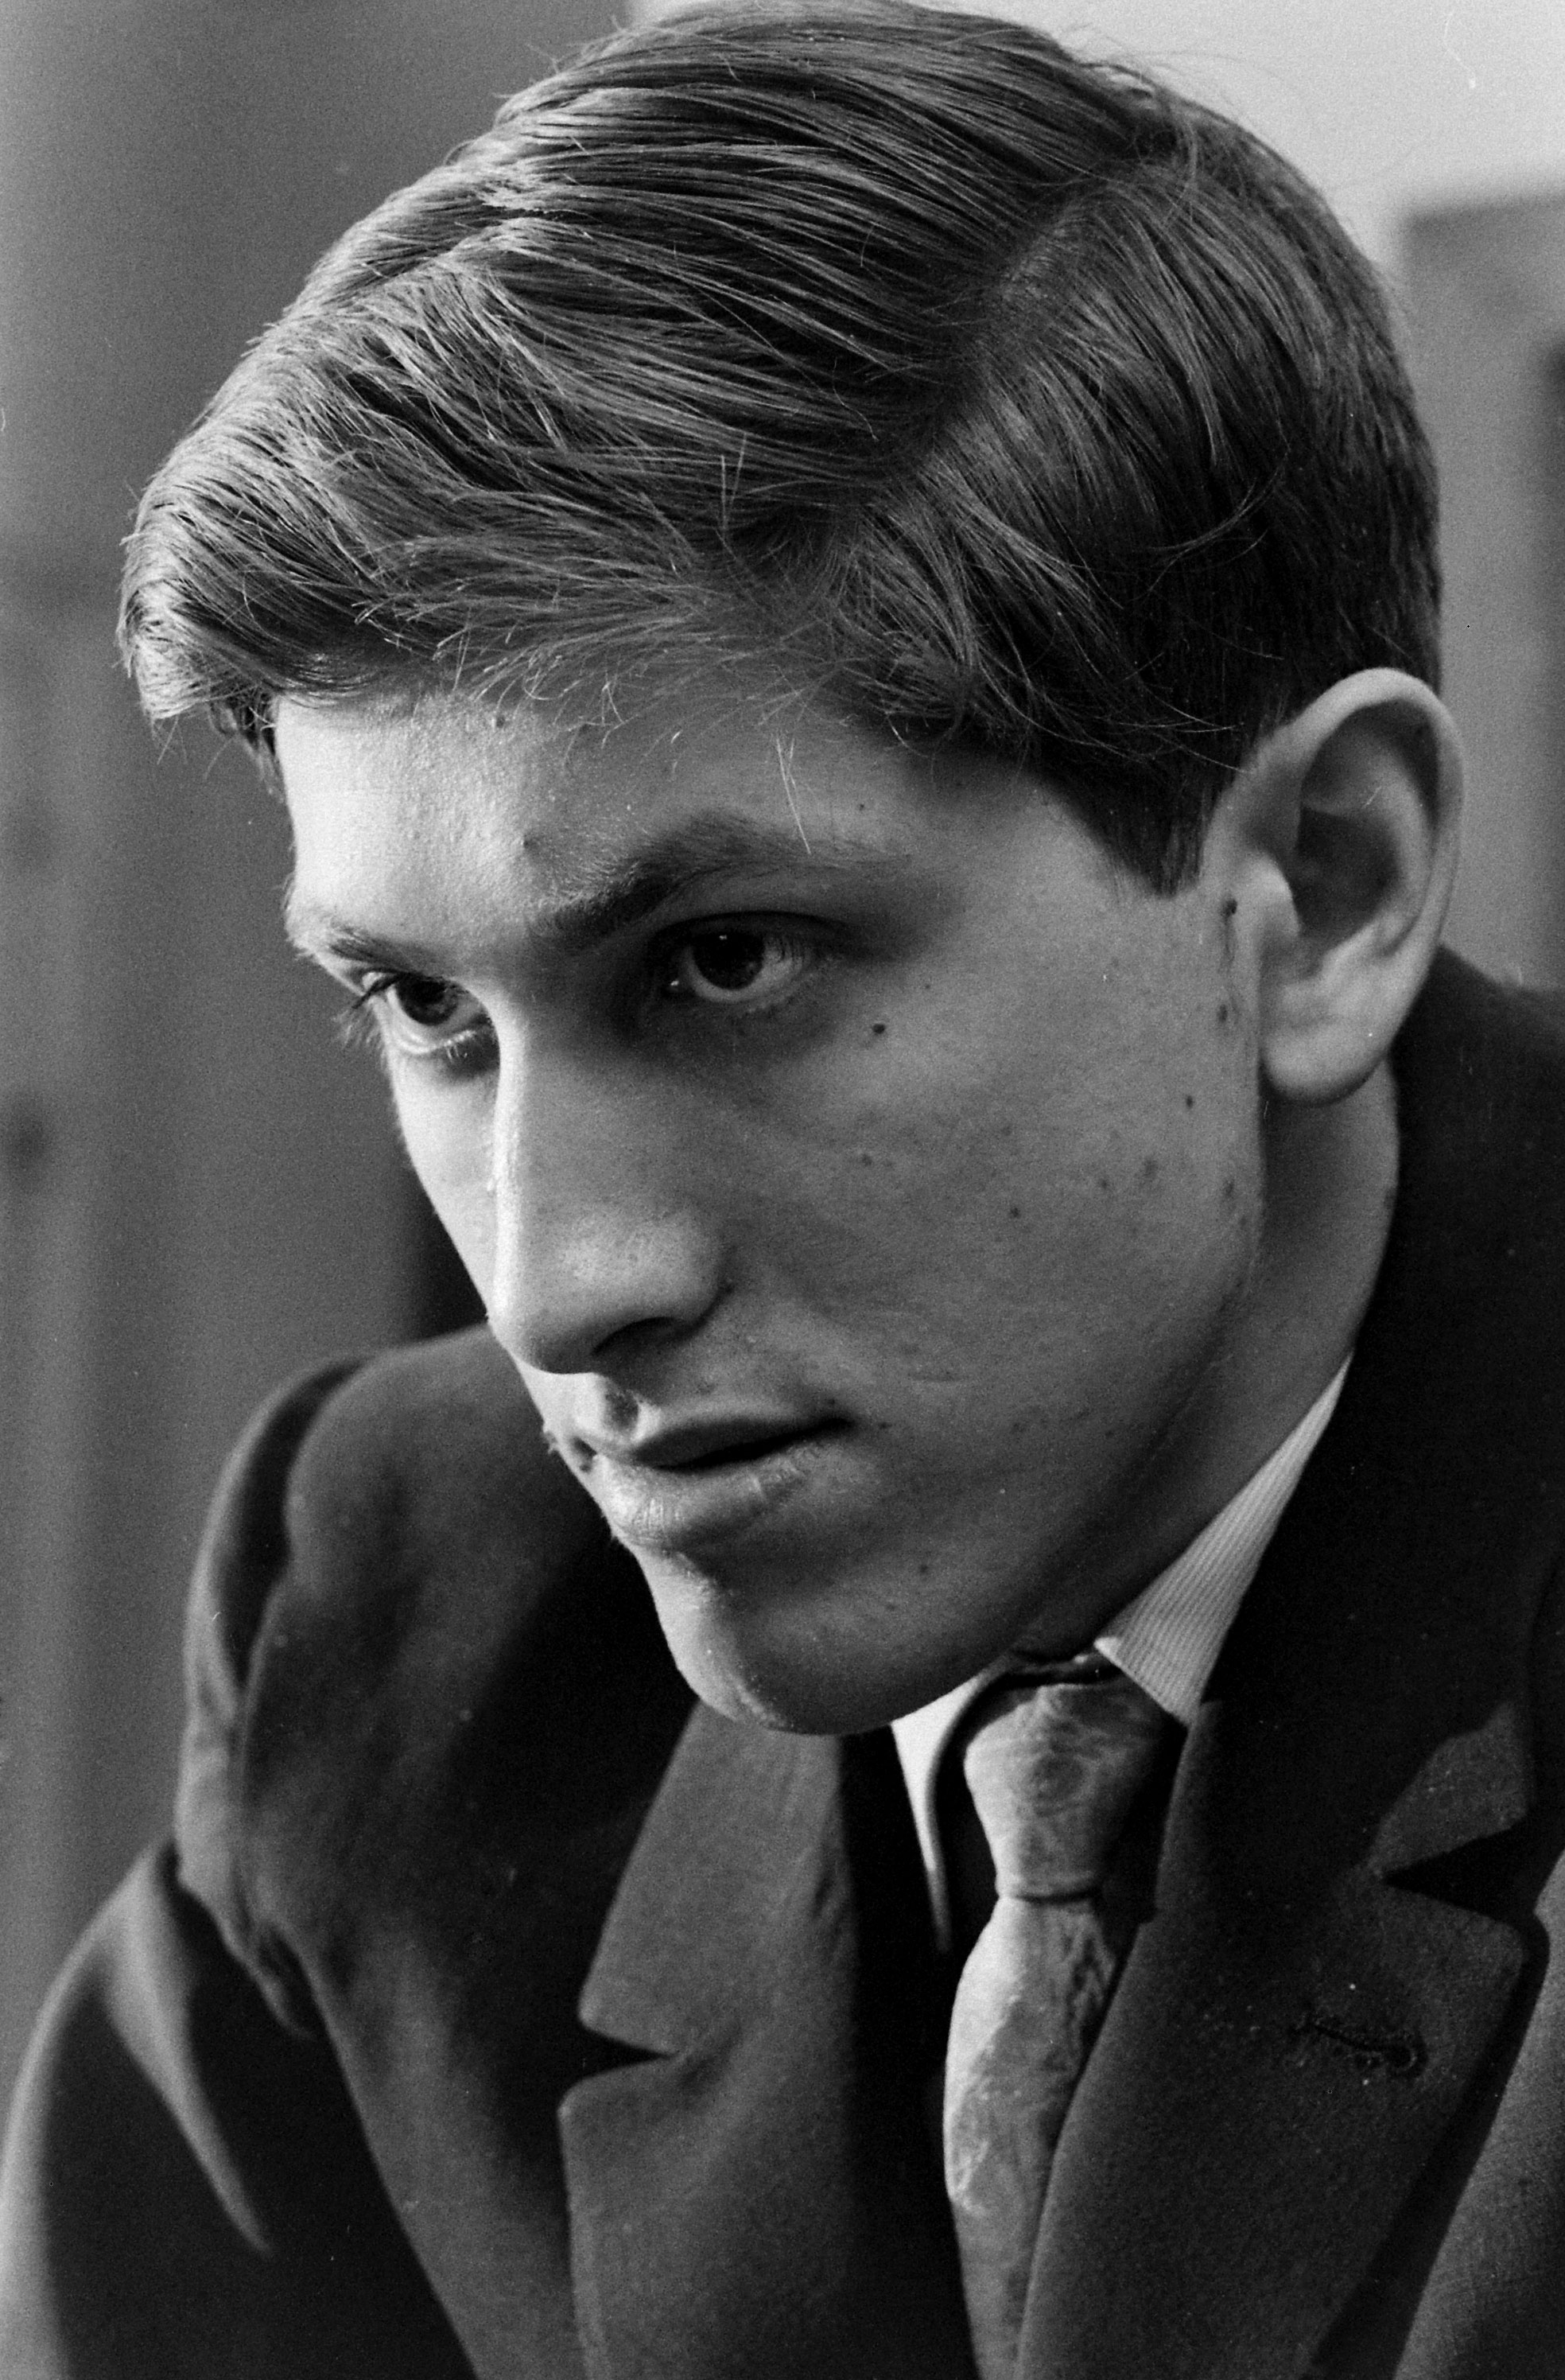 Bobby Fischer in New York, 1962.